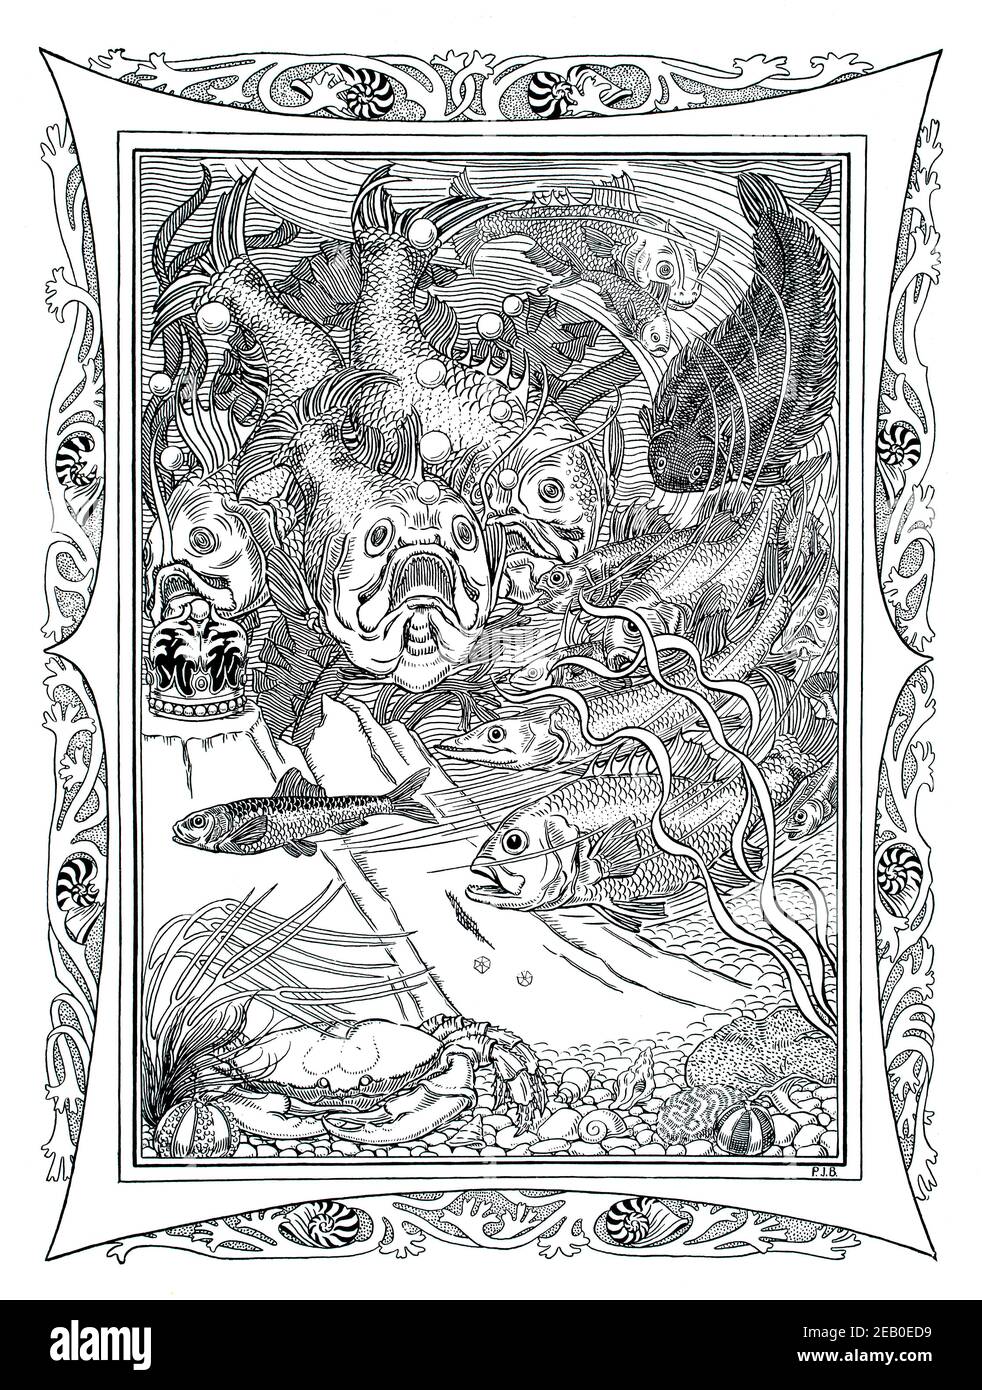 Scène sous-marine, poisson avec perles et couronne, illustration par Percy James Billinghurst en 1898 le Studio un magazine illustré de fin et appliqué Banque D'Images